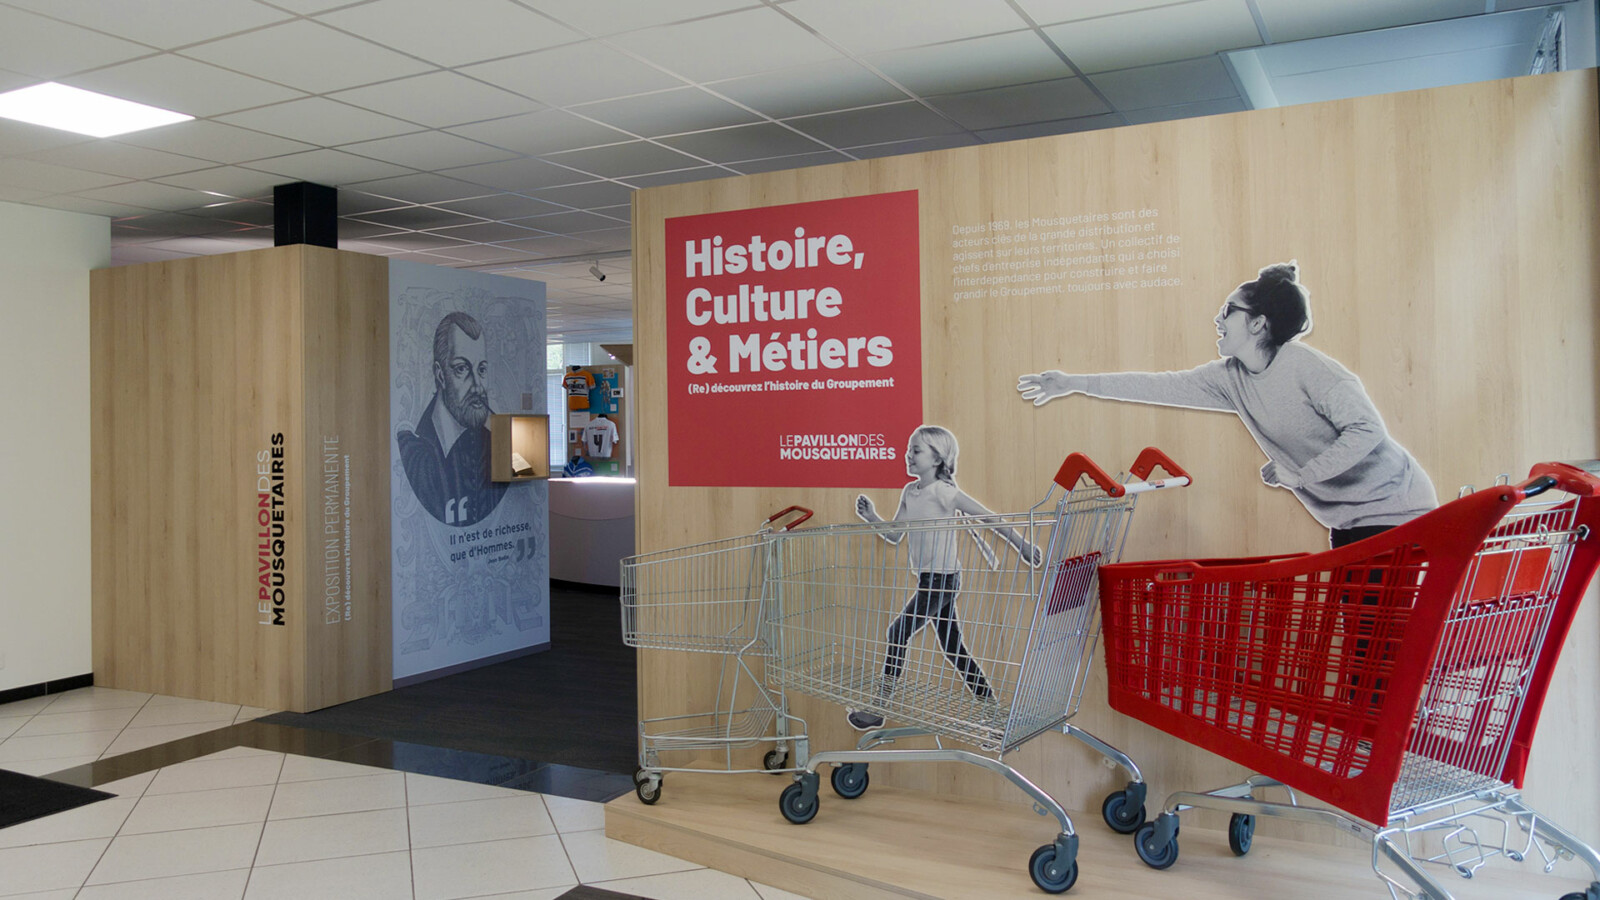 Vue de l’entrée du musée d’entreprise des Mousquetaires. Trois caddies de supermarché sont exposés sous le panneau rouge « Histoire, Culture & Métiers -Le Pavillon des Mousquetaires ».